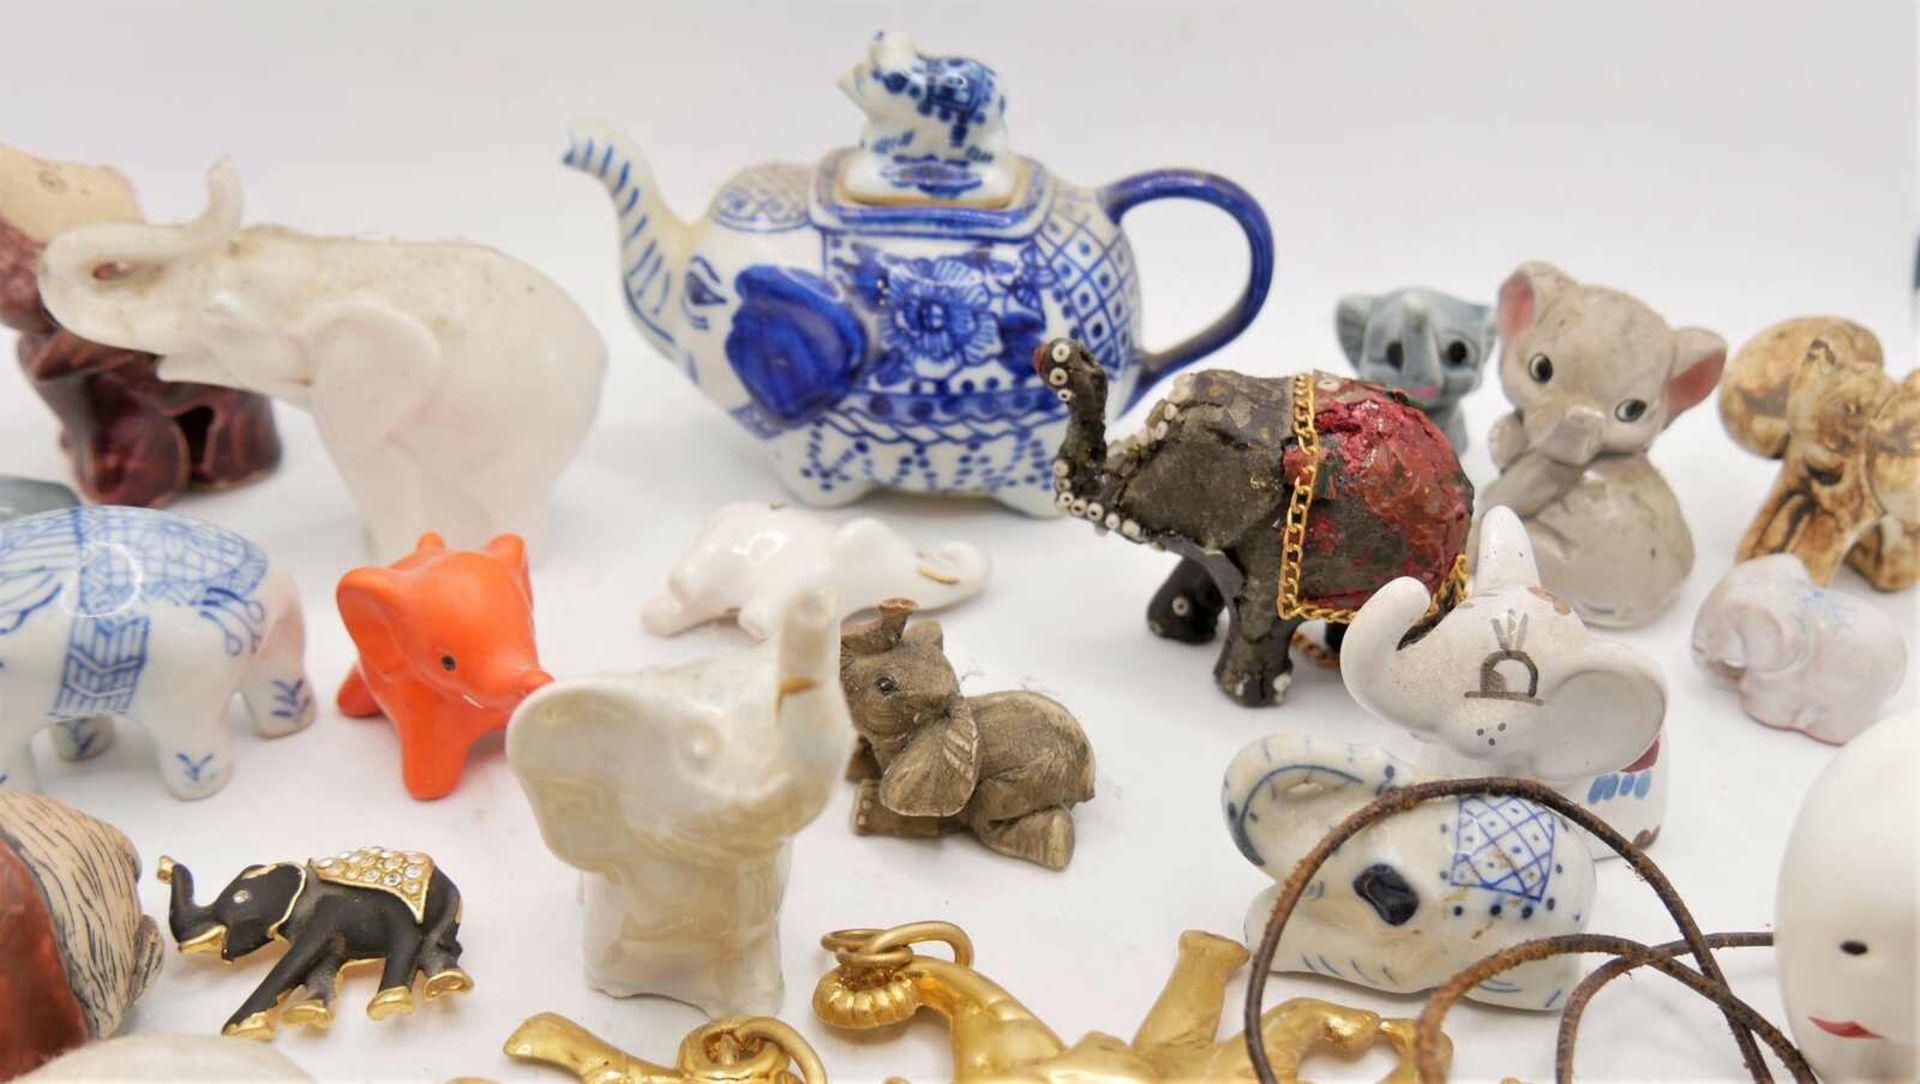 Lot Elefanten aus Auflösung, dabei Porzellan, Keramik, etc. sowie ein Gürtel, eine Brosche, etc. - Bild 2 aus 2